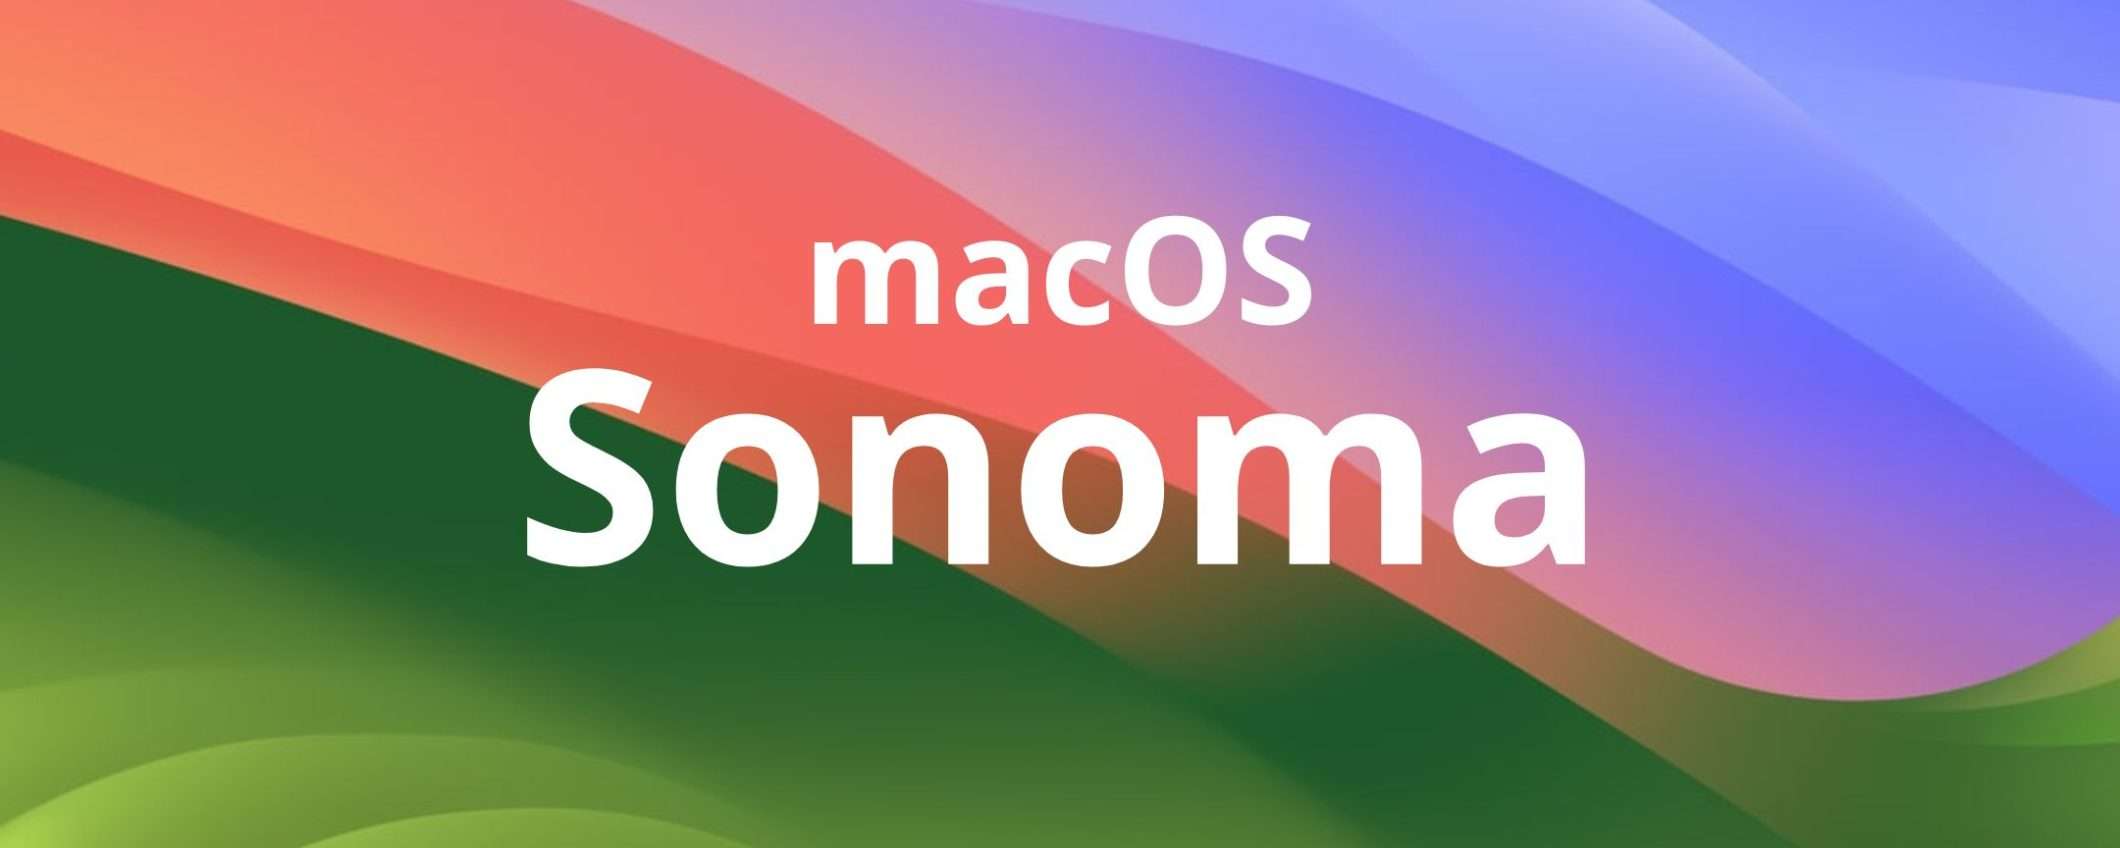 MacOS Sonoma: alcune funzionalità non sono disponibili sui i Mac con SoC Intel